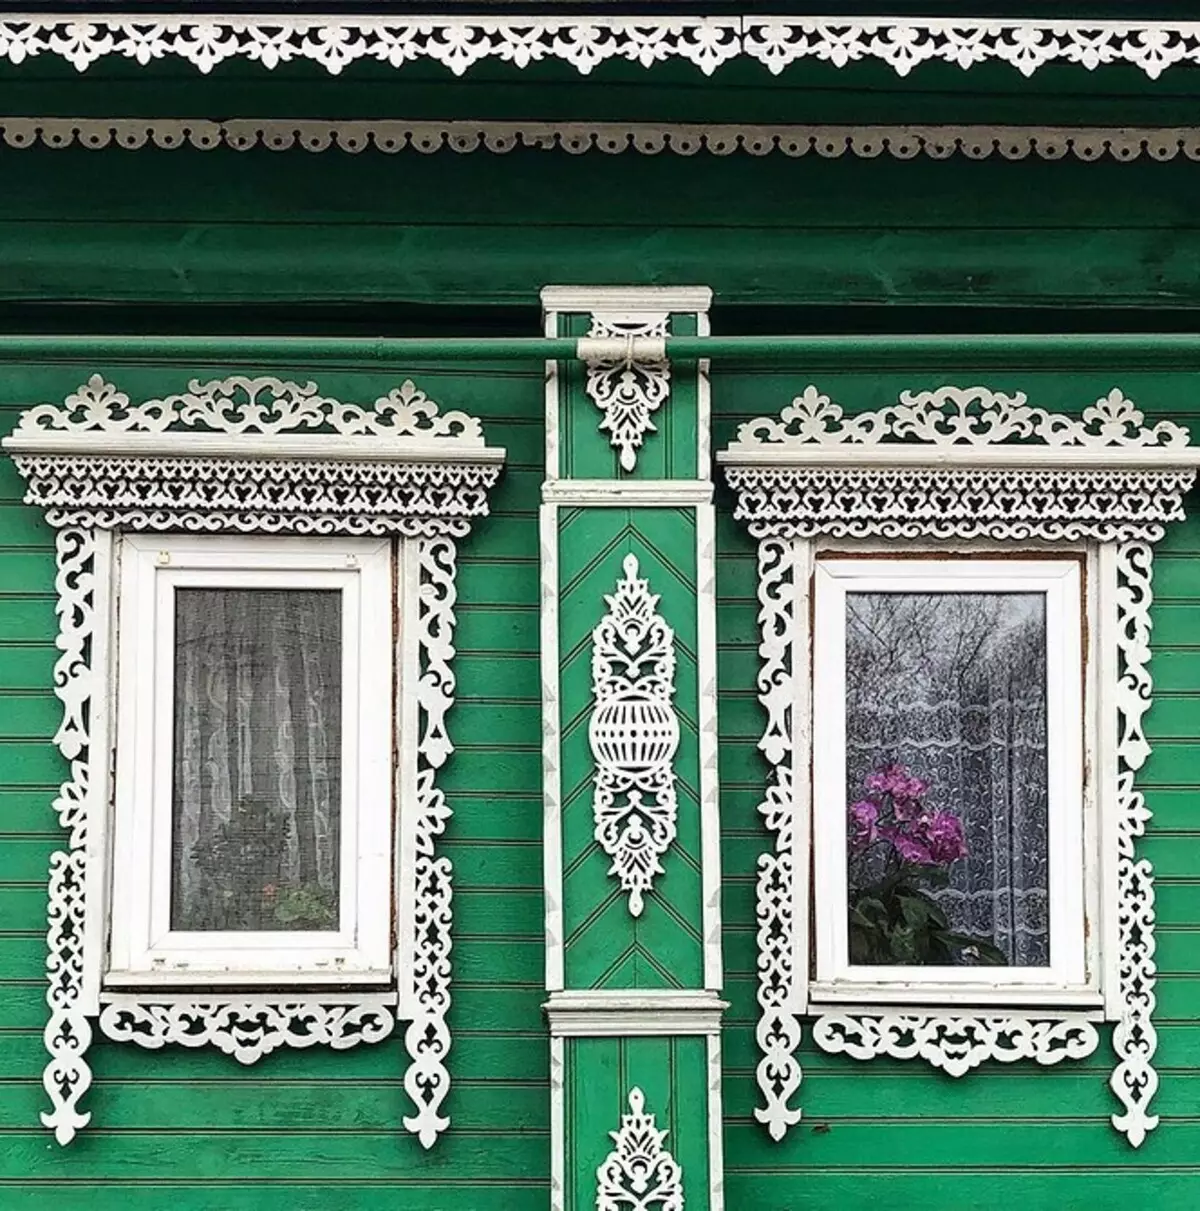 Patbands esculpidos nas janelas em uma casa de madeira: maternitym e instalar faz você mesmo 9481_16